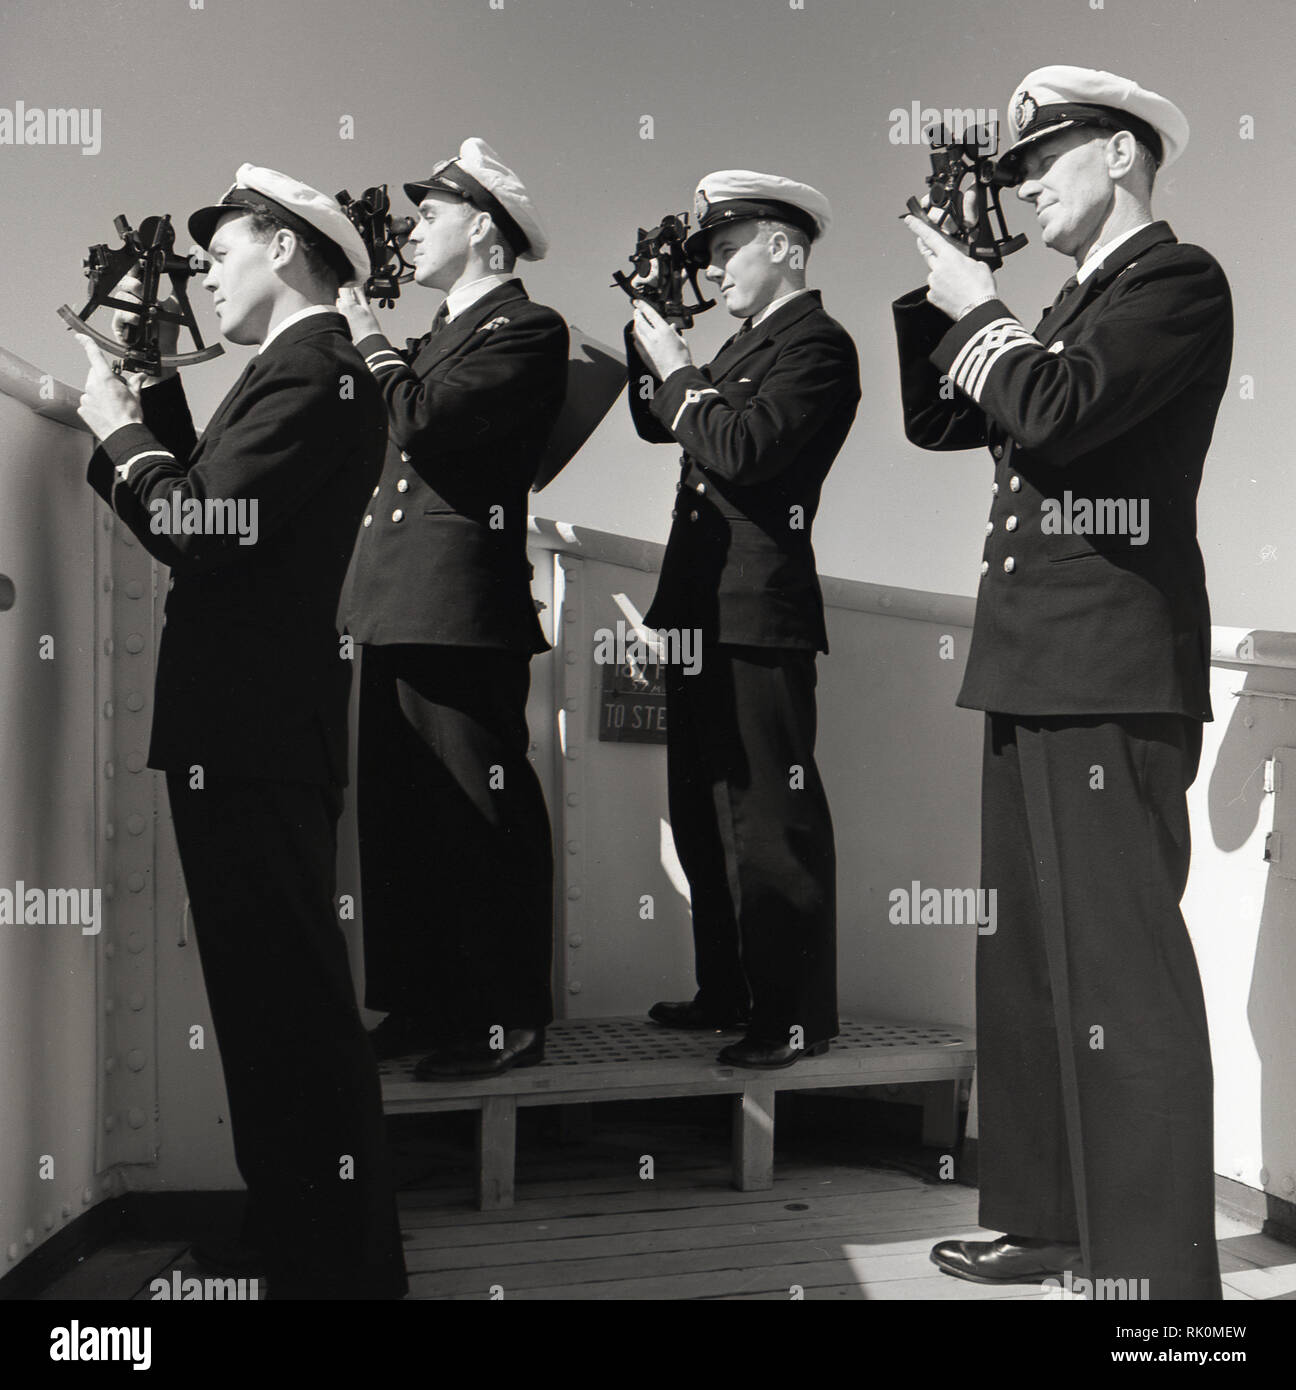 Années 1950, historiques, à l'aide d'officiers de navire en uniforme les sextants, instruments de navigation traditionnelles, sur le pont d'un bateau à vapeur Union-Castle. Banque D'Images